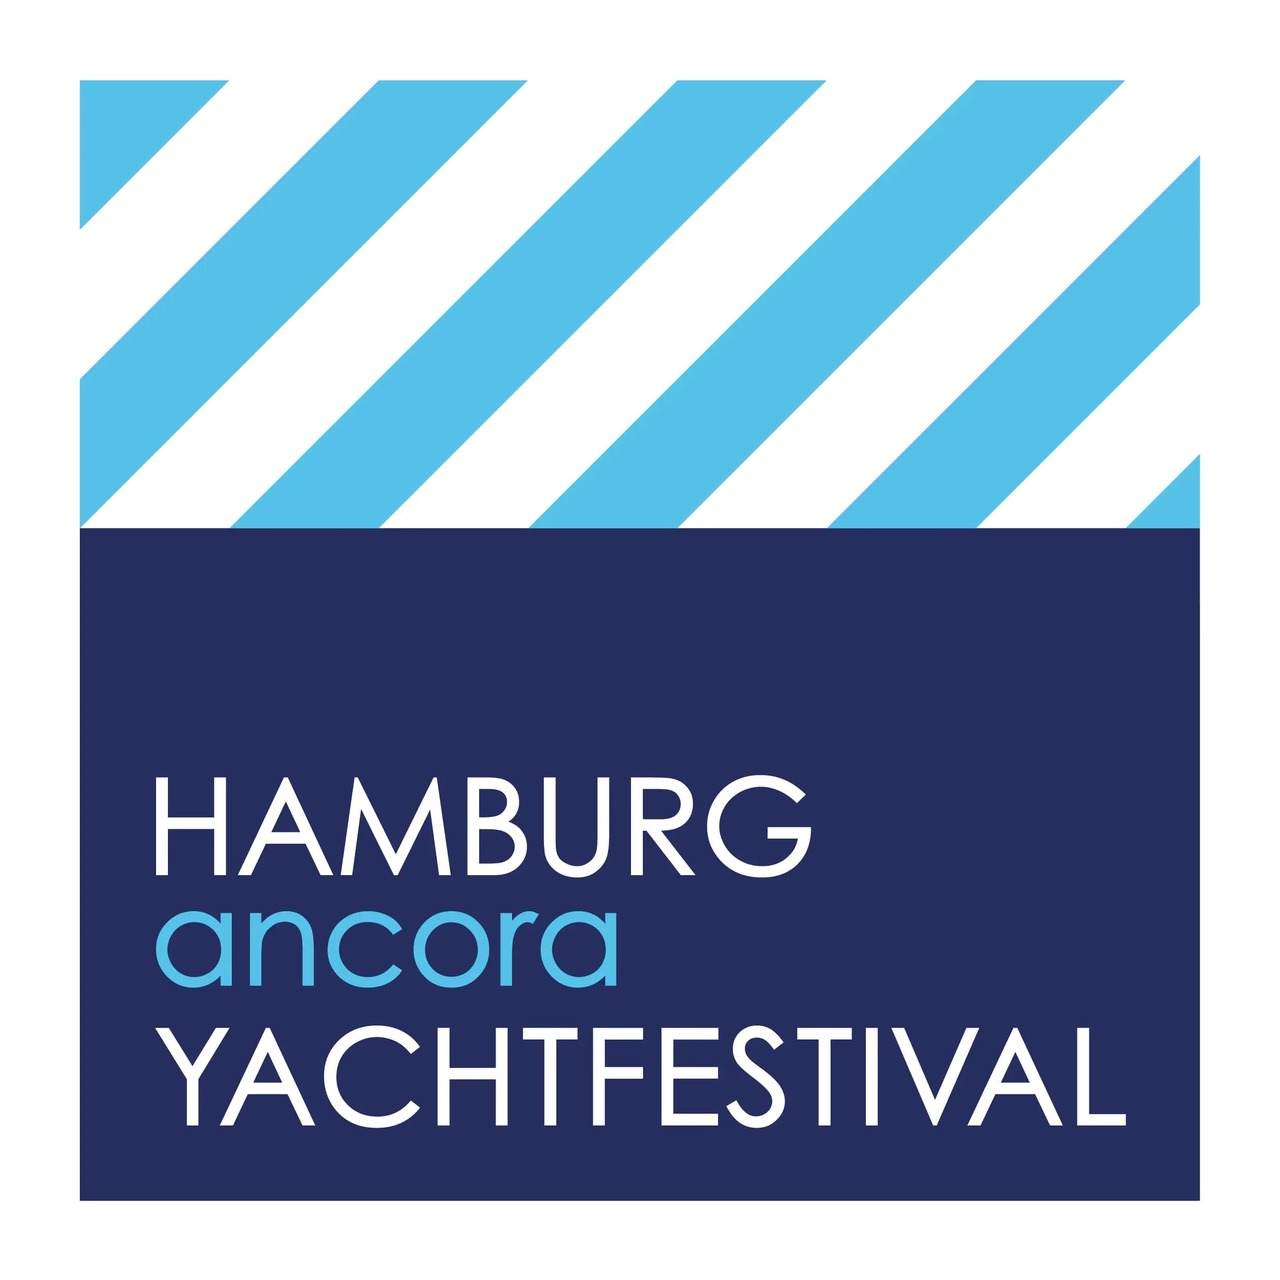 HAMBURG Ancora YACHTFESTIVAL | Deutschland